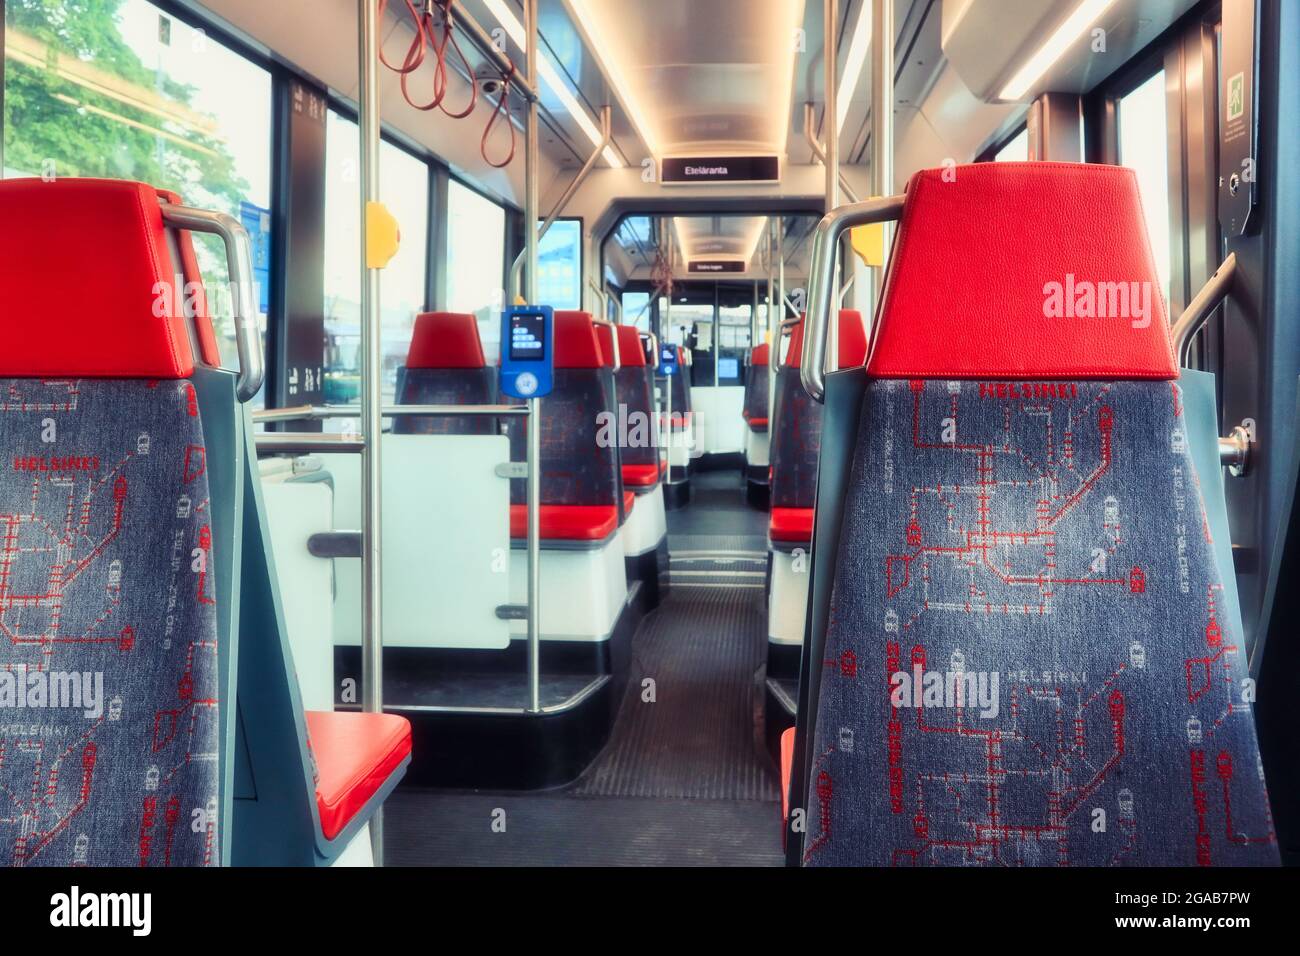 All'interno dell'auto del tram di Helsinki, posti a sedere vuoti senza persone presenti. Helsinki, Finlandia. 3 luglio 2020. Foto Stock